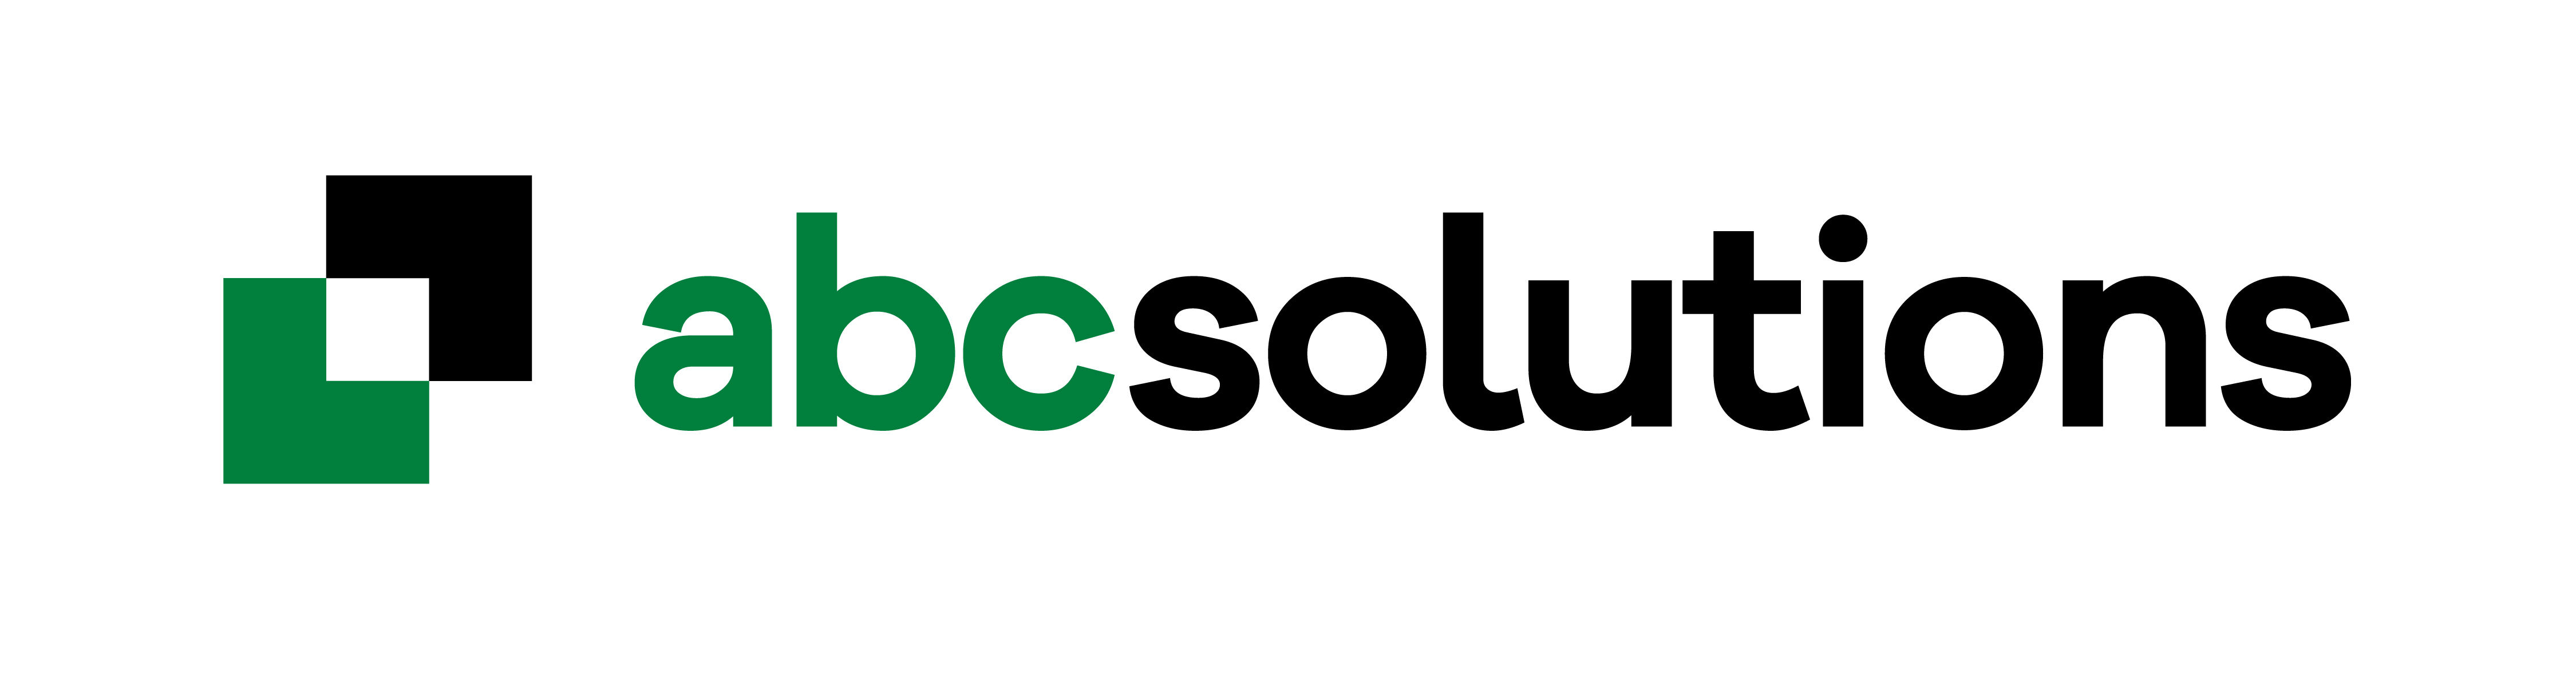 ABC Solutions d.o.o. logo